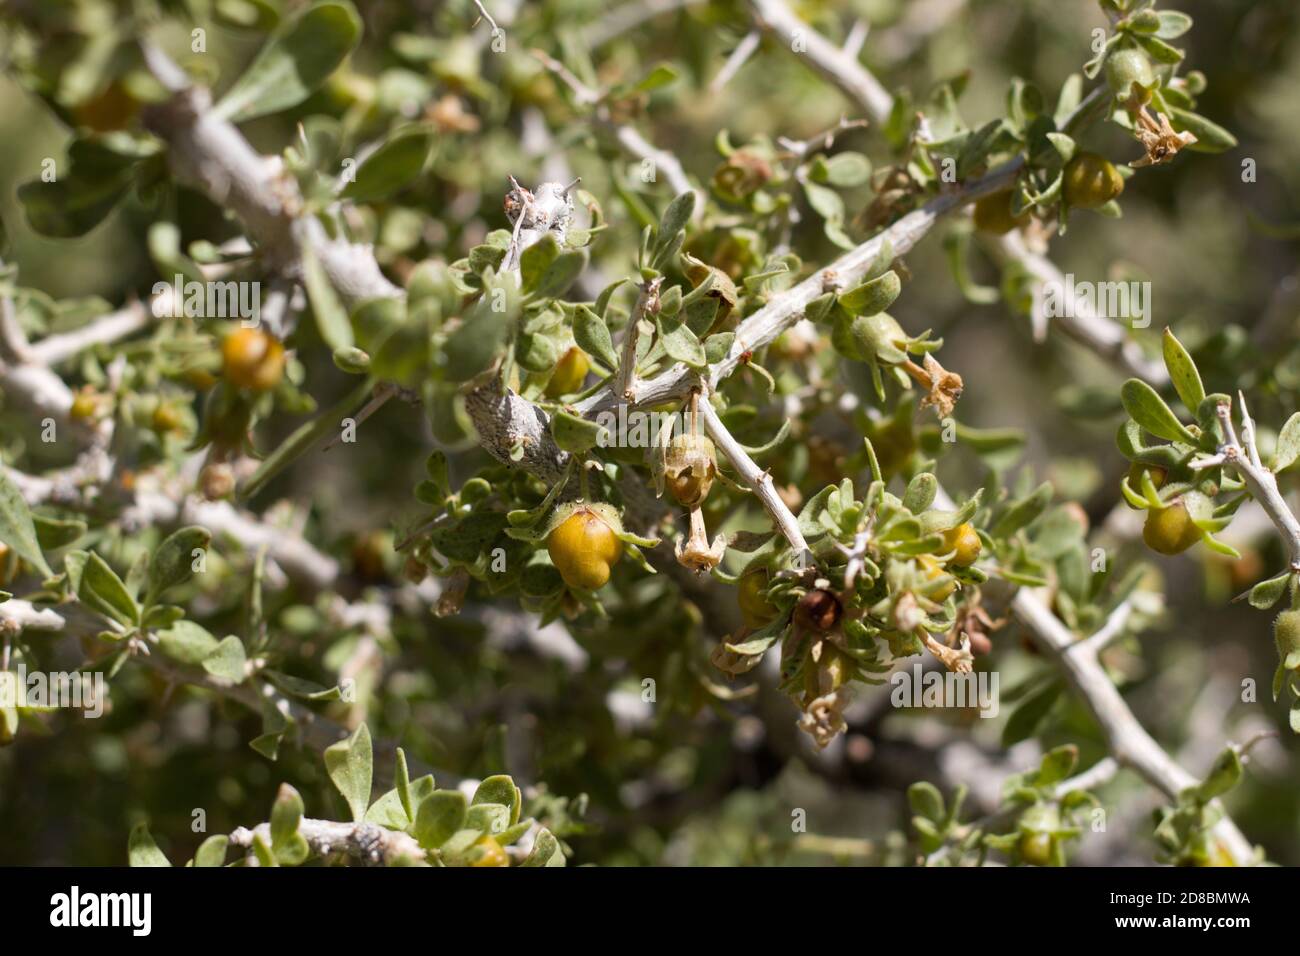 Fruta madura amarilla, espino de Peach, cooperi Lycium, Solanaceae, arbusto espinoso nativo, Parque Nacional Joshua Tree, Desierto Mojave del Sur, Verano. Foto de stock